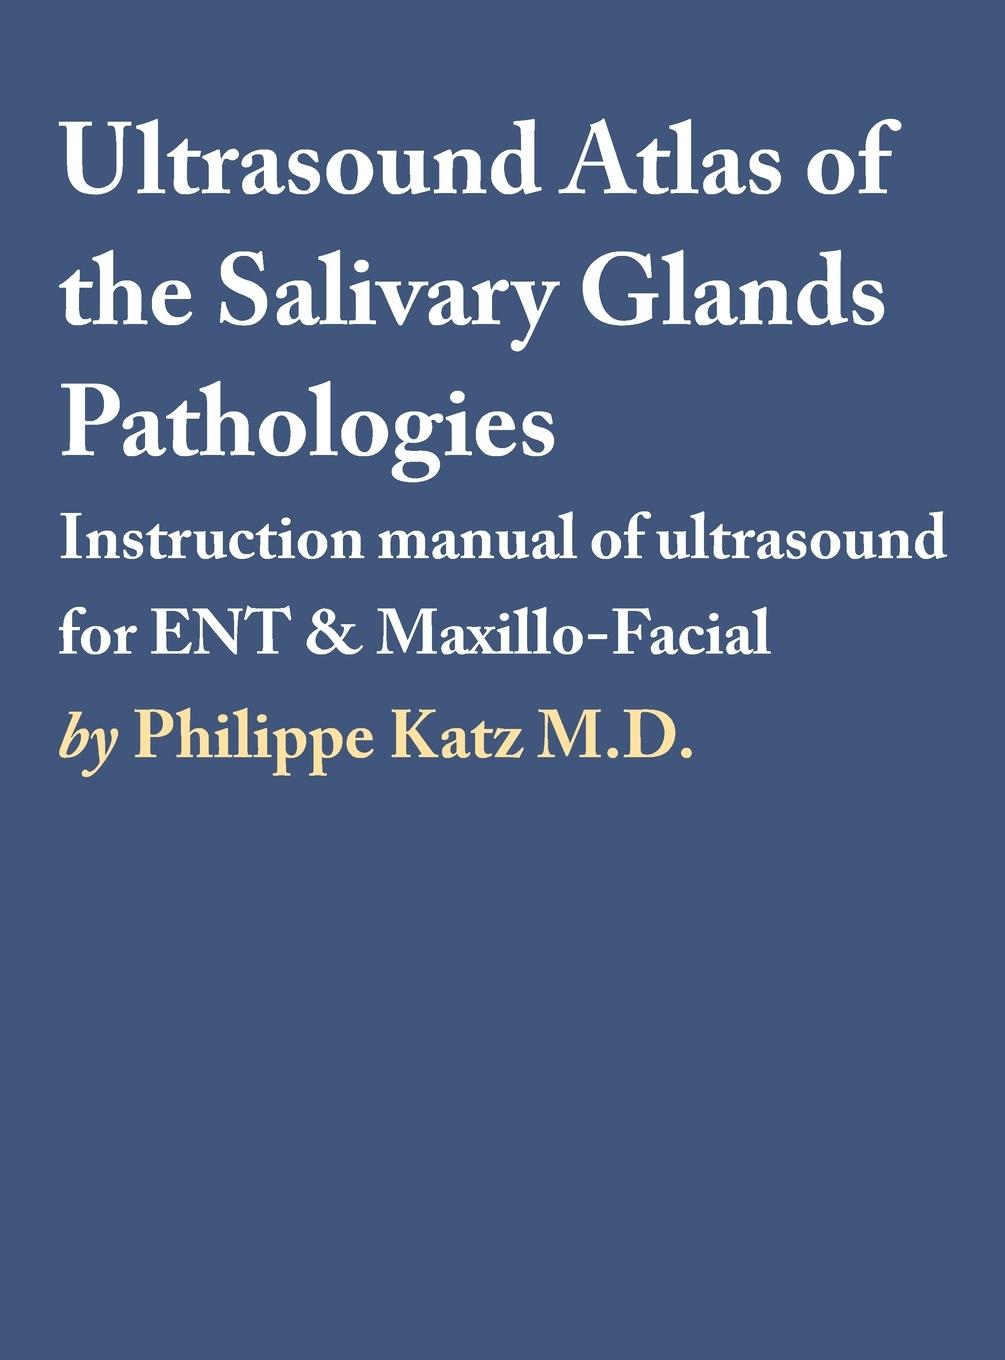 Könyv Ultrasound Atlas of the Salivary Glands Pathologies 